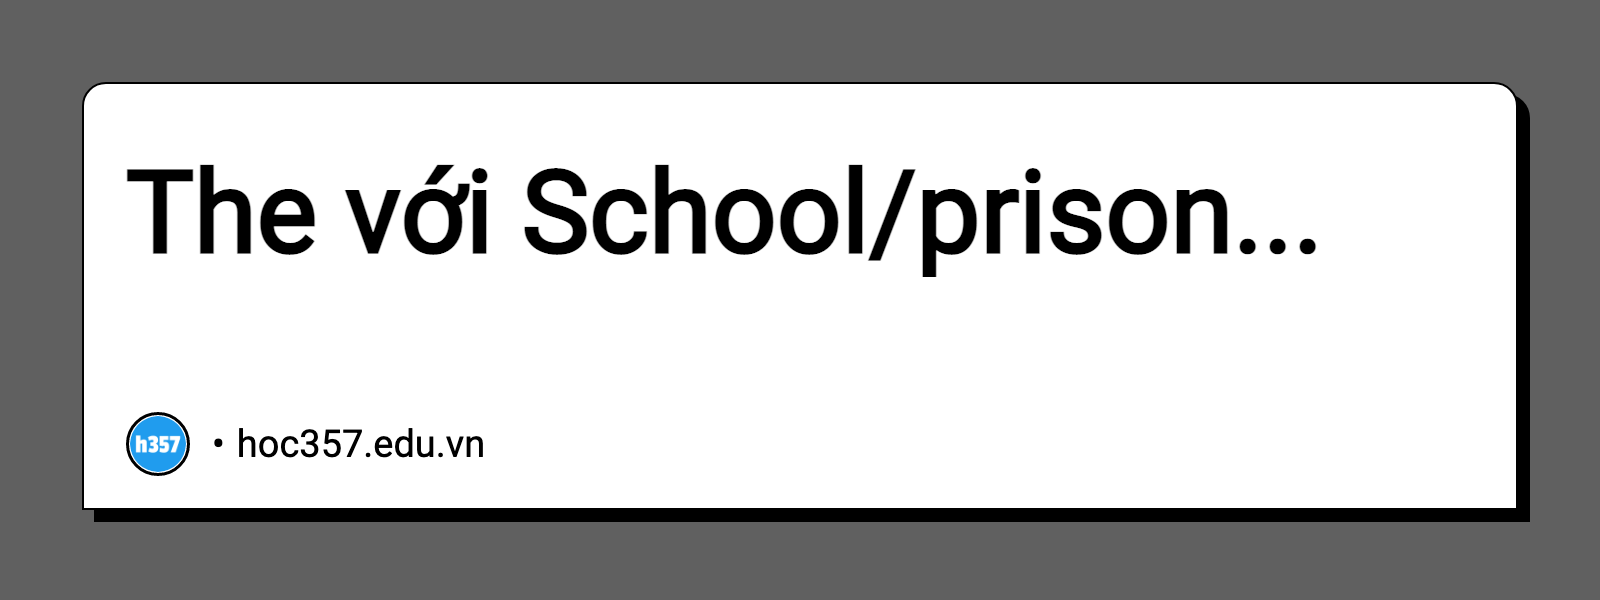 Hình minh họa The với School/prison...